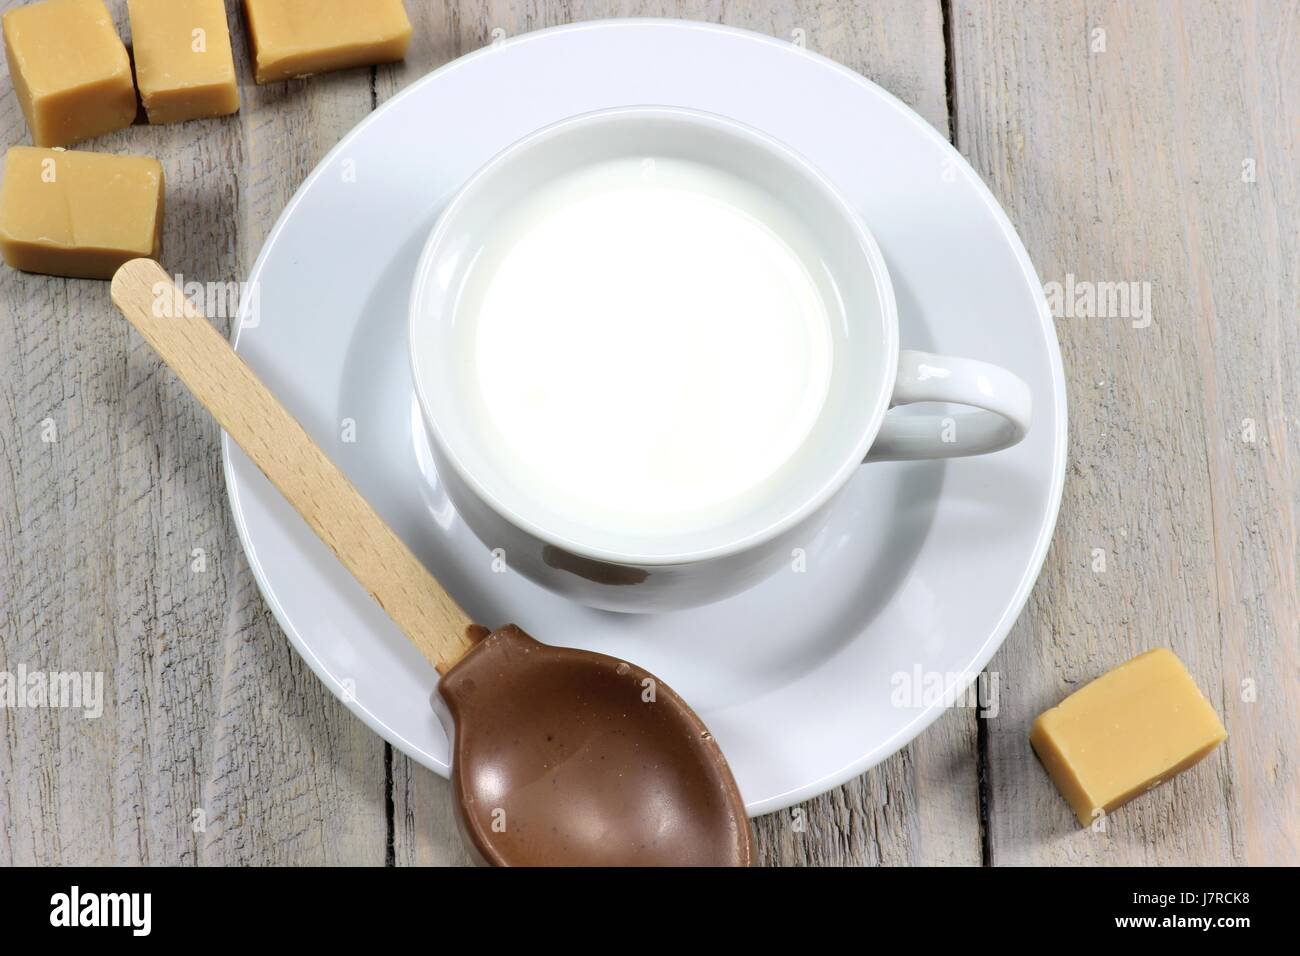 La leche que se están preparando para un chocolate caliente con sabor a caramelo Foto de stock